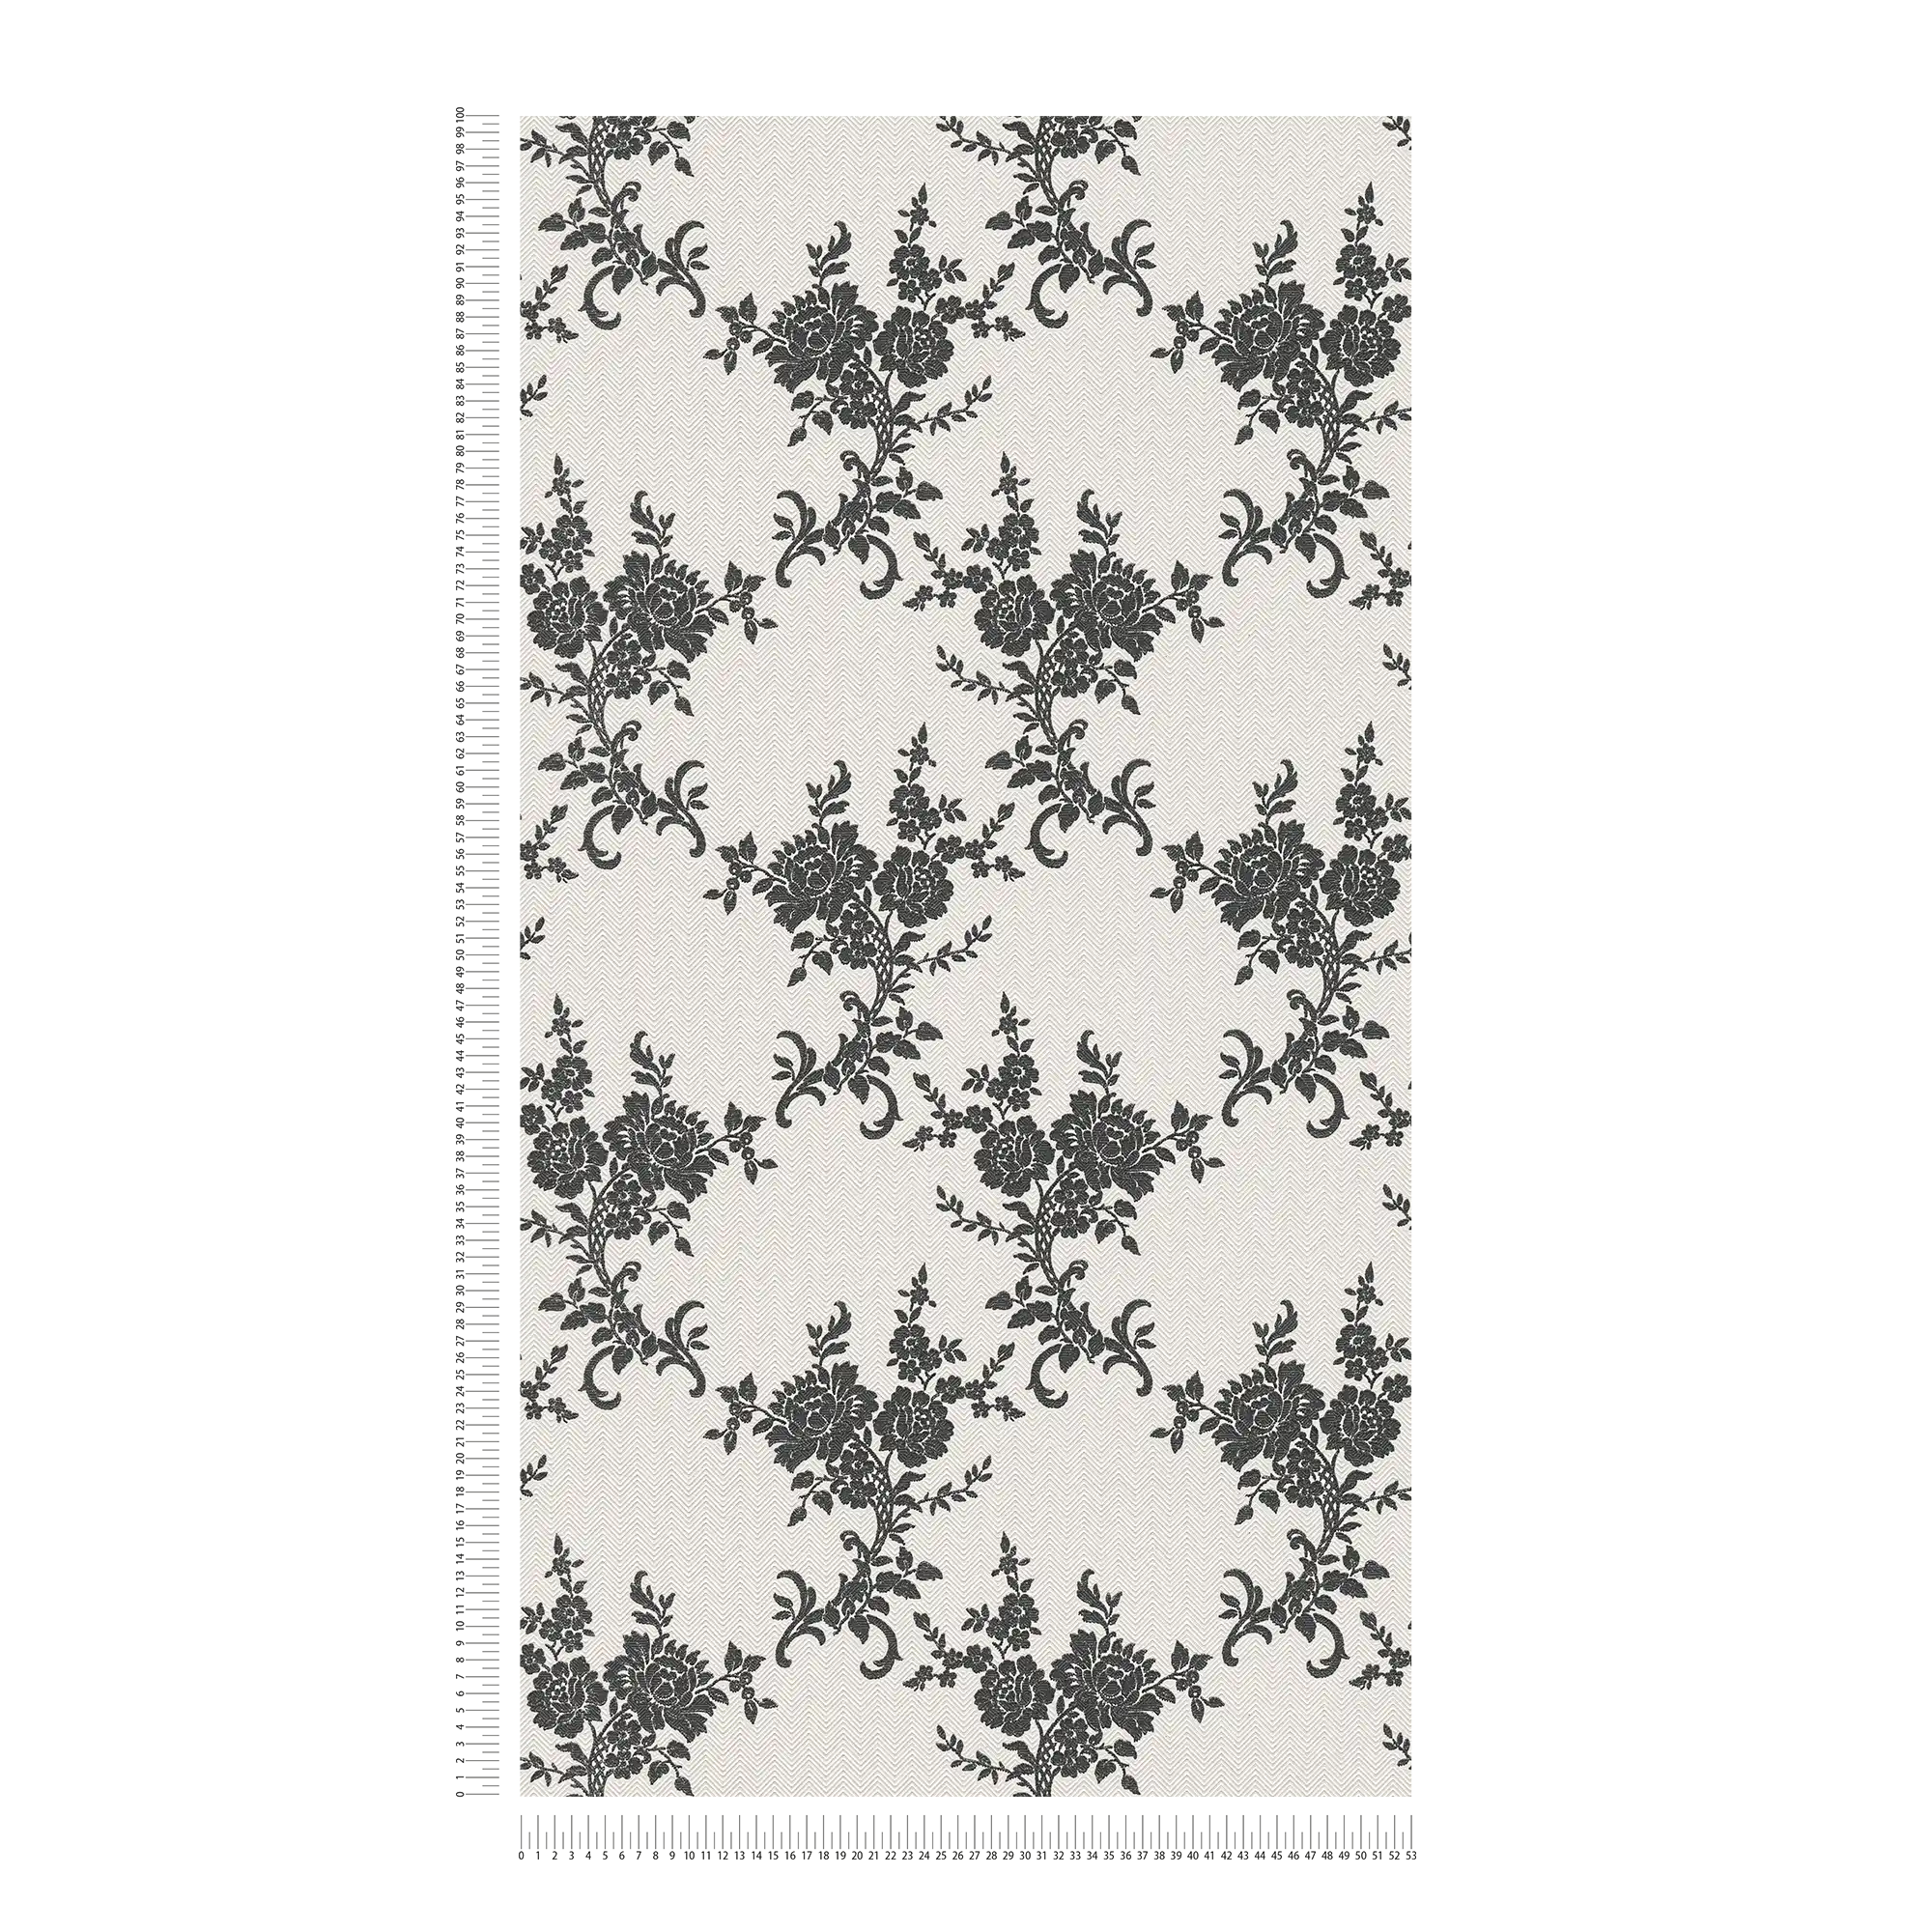             Papierbehang bloemornamenten & chevron patroon - zwart, wit, zilver
        